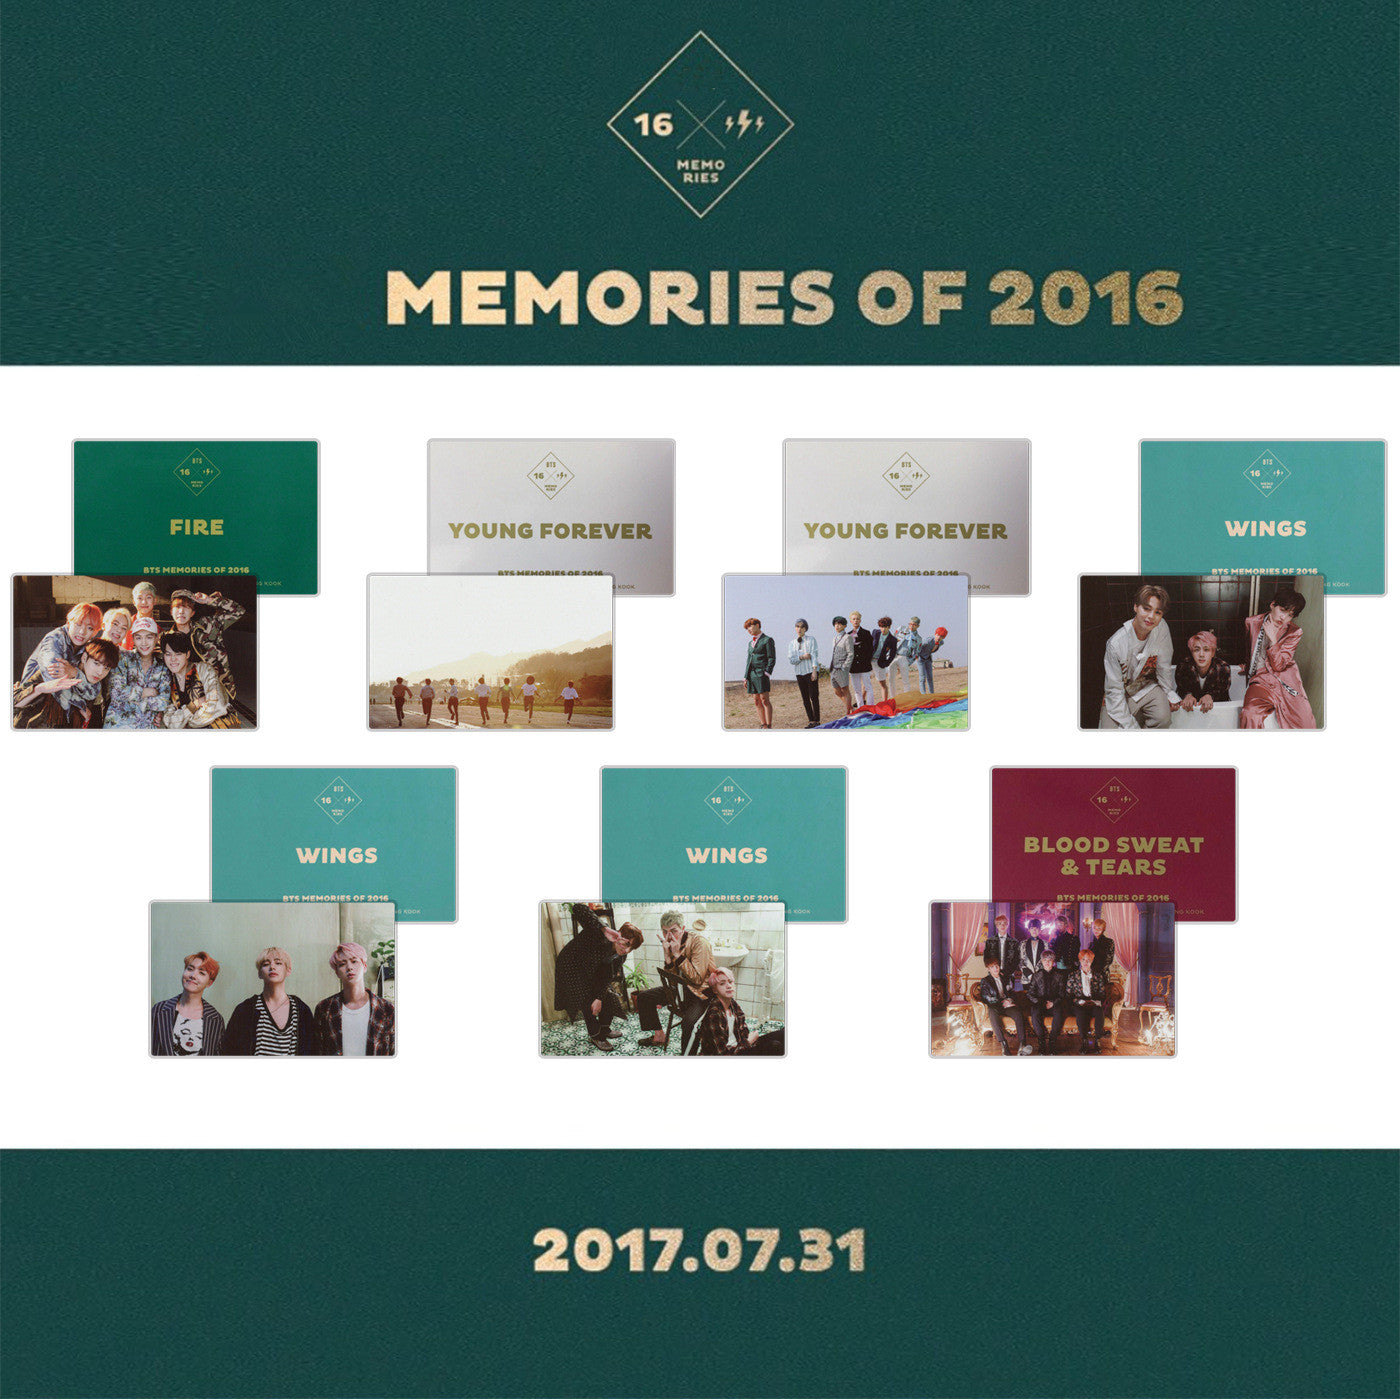 BTS MEMORIES OF 2016